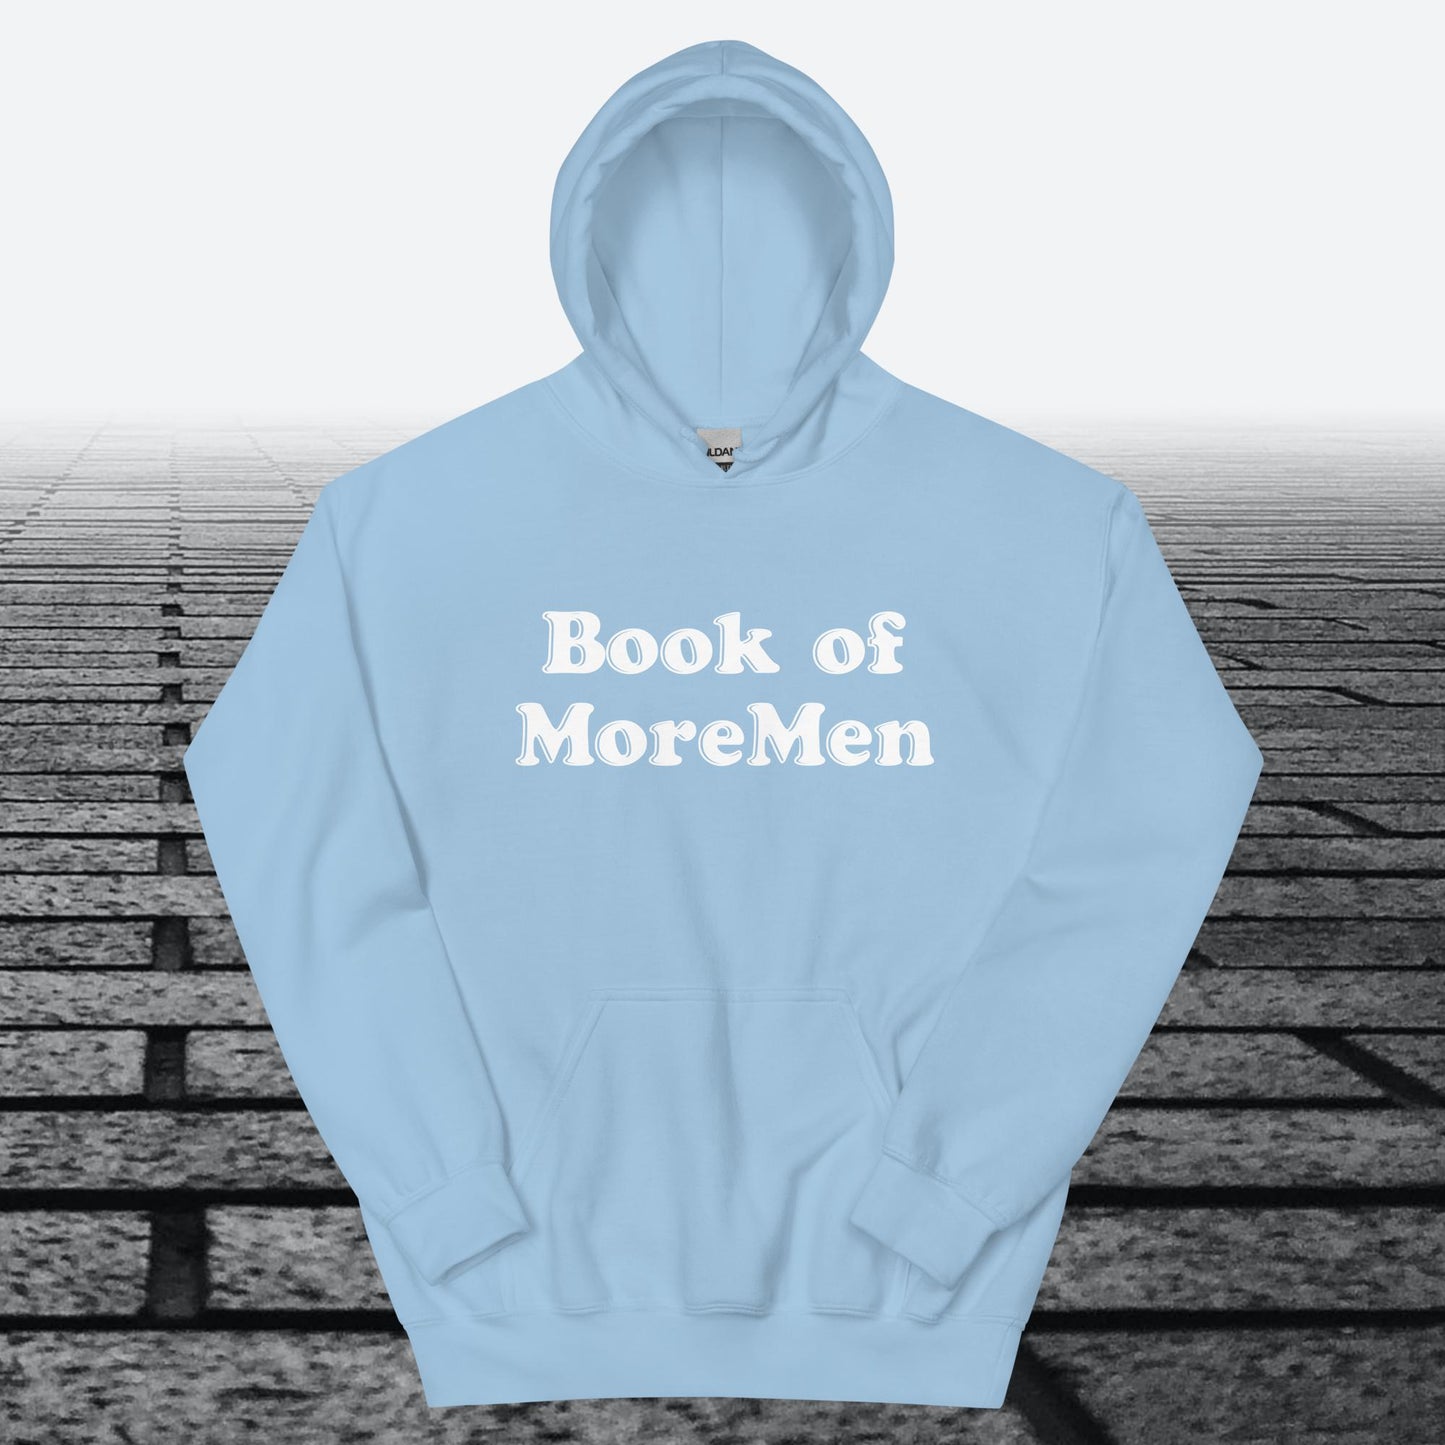 Book of MoreMen, Hoodie Sweatshirt